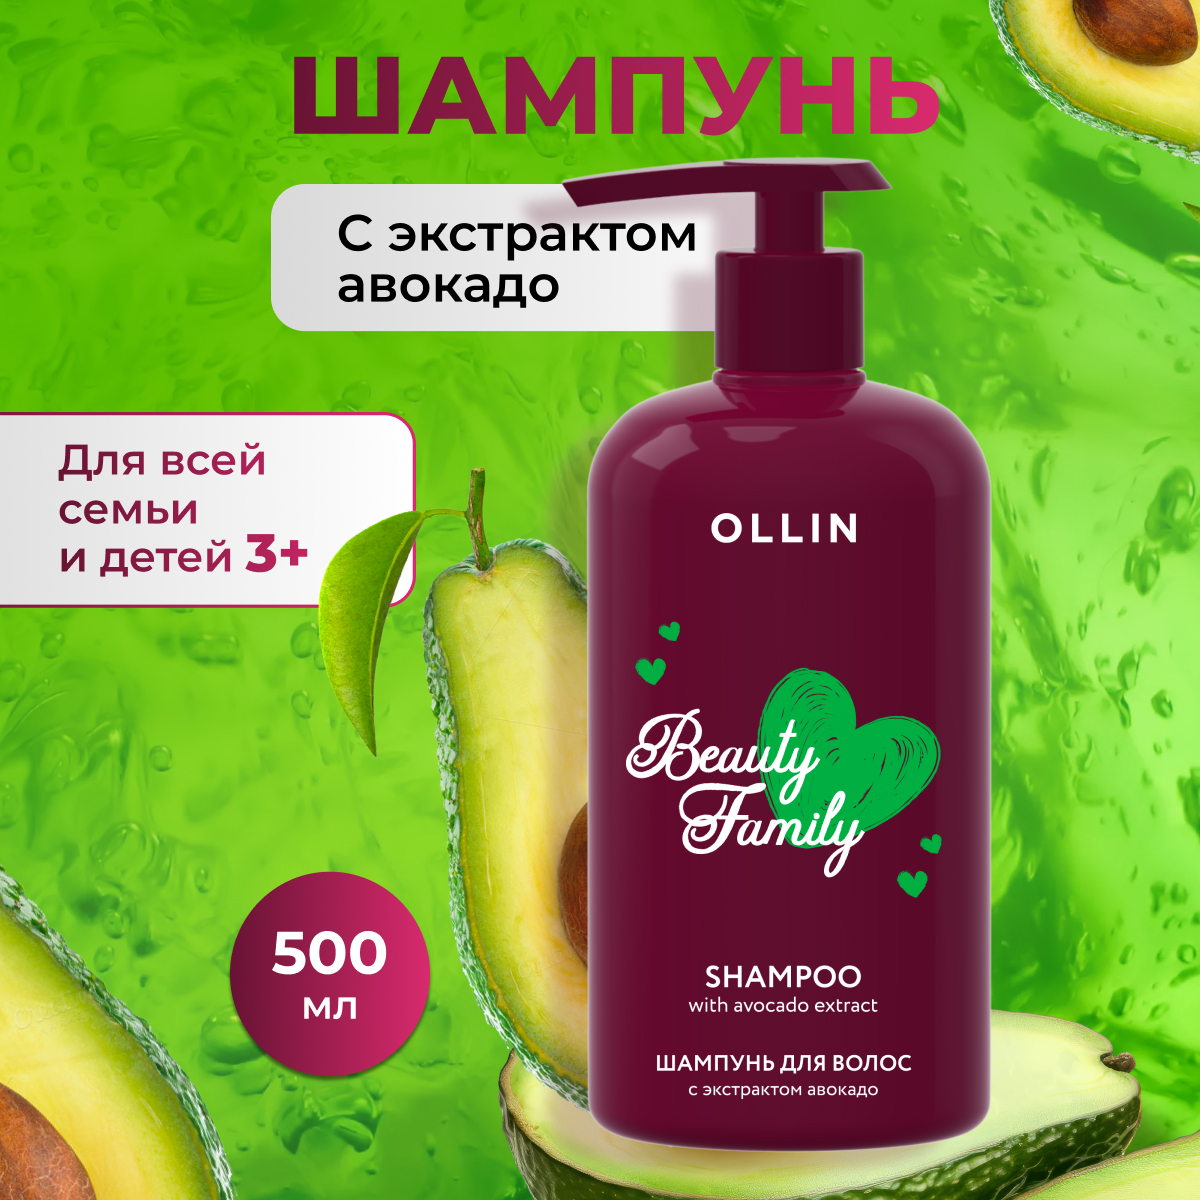 Шампунь для волос с экстрактом авокадо OLLIN BEAUTY FAMILY, 500 мл